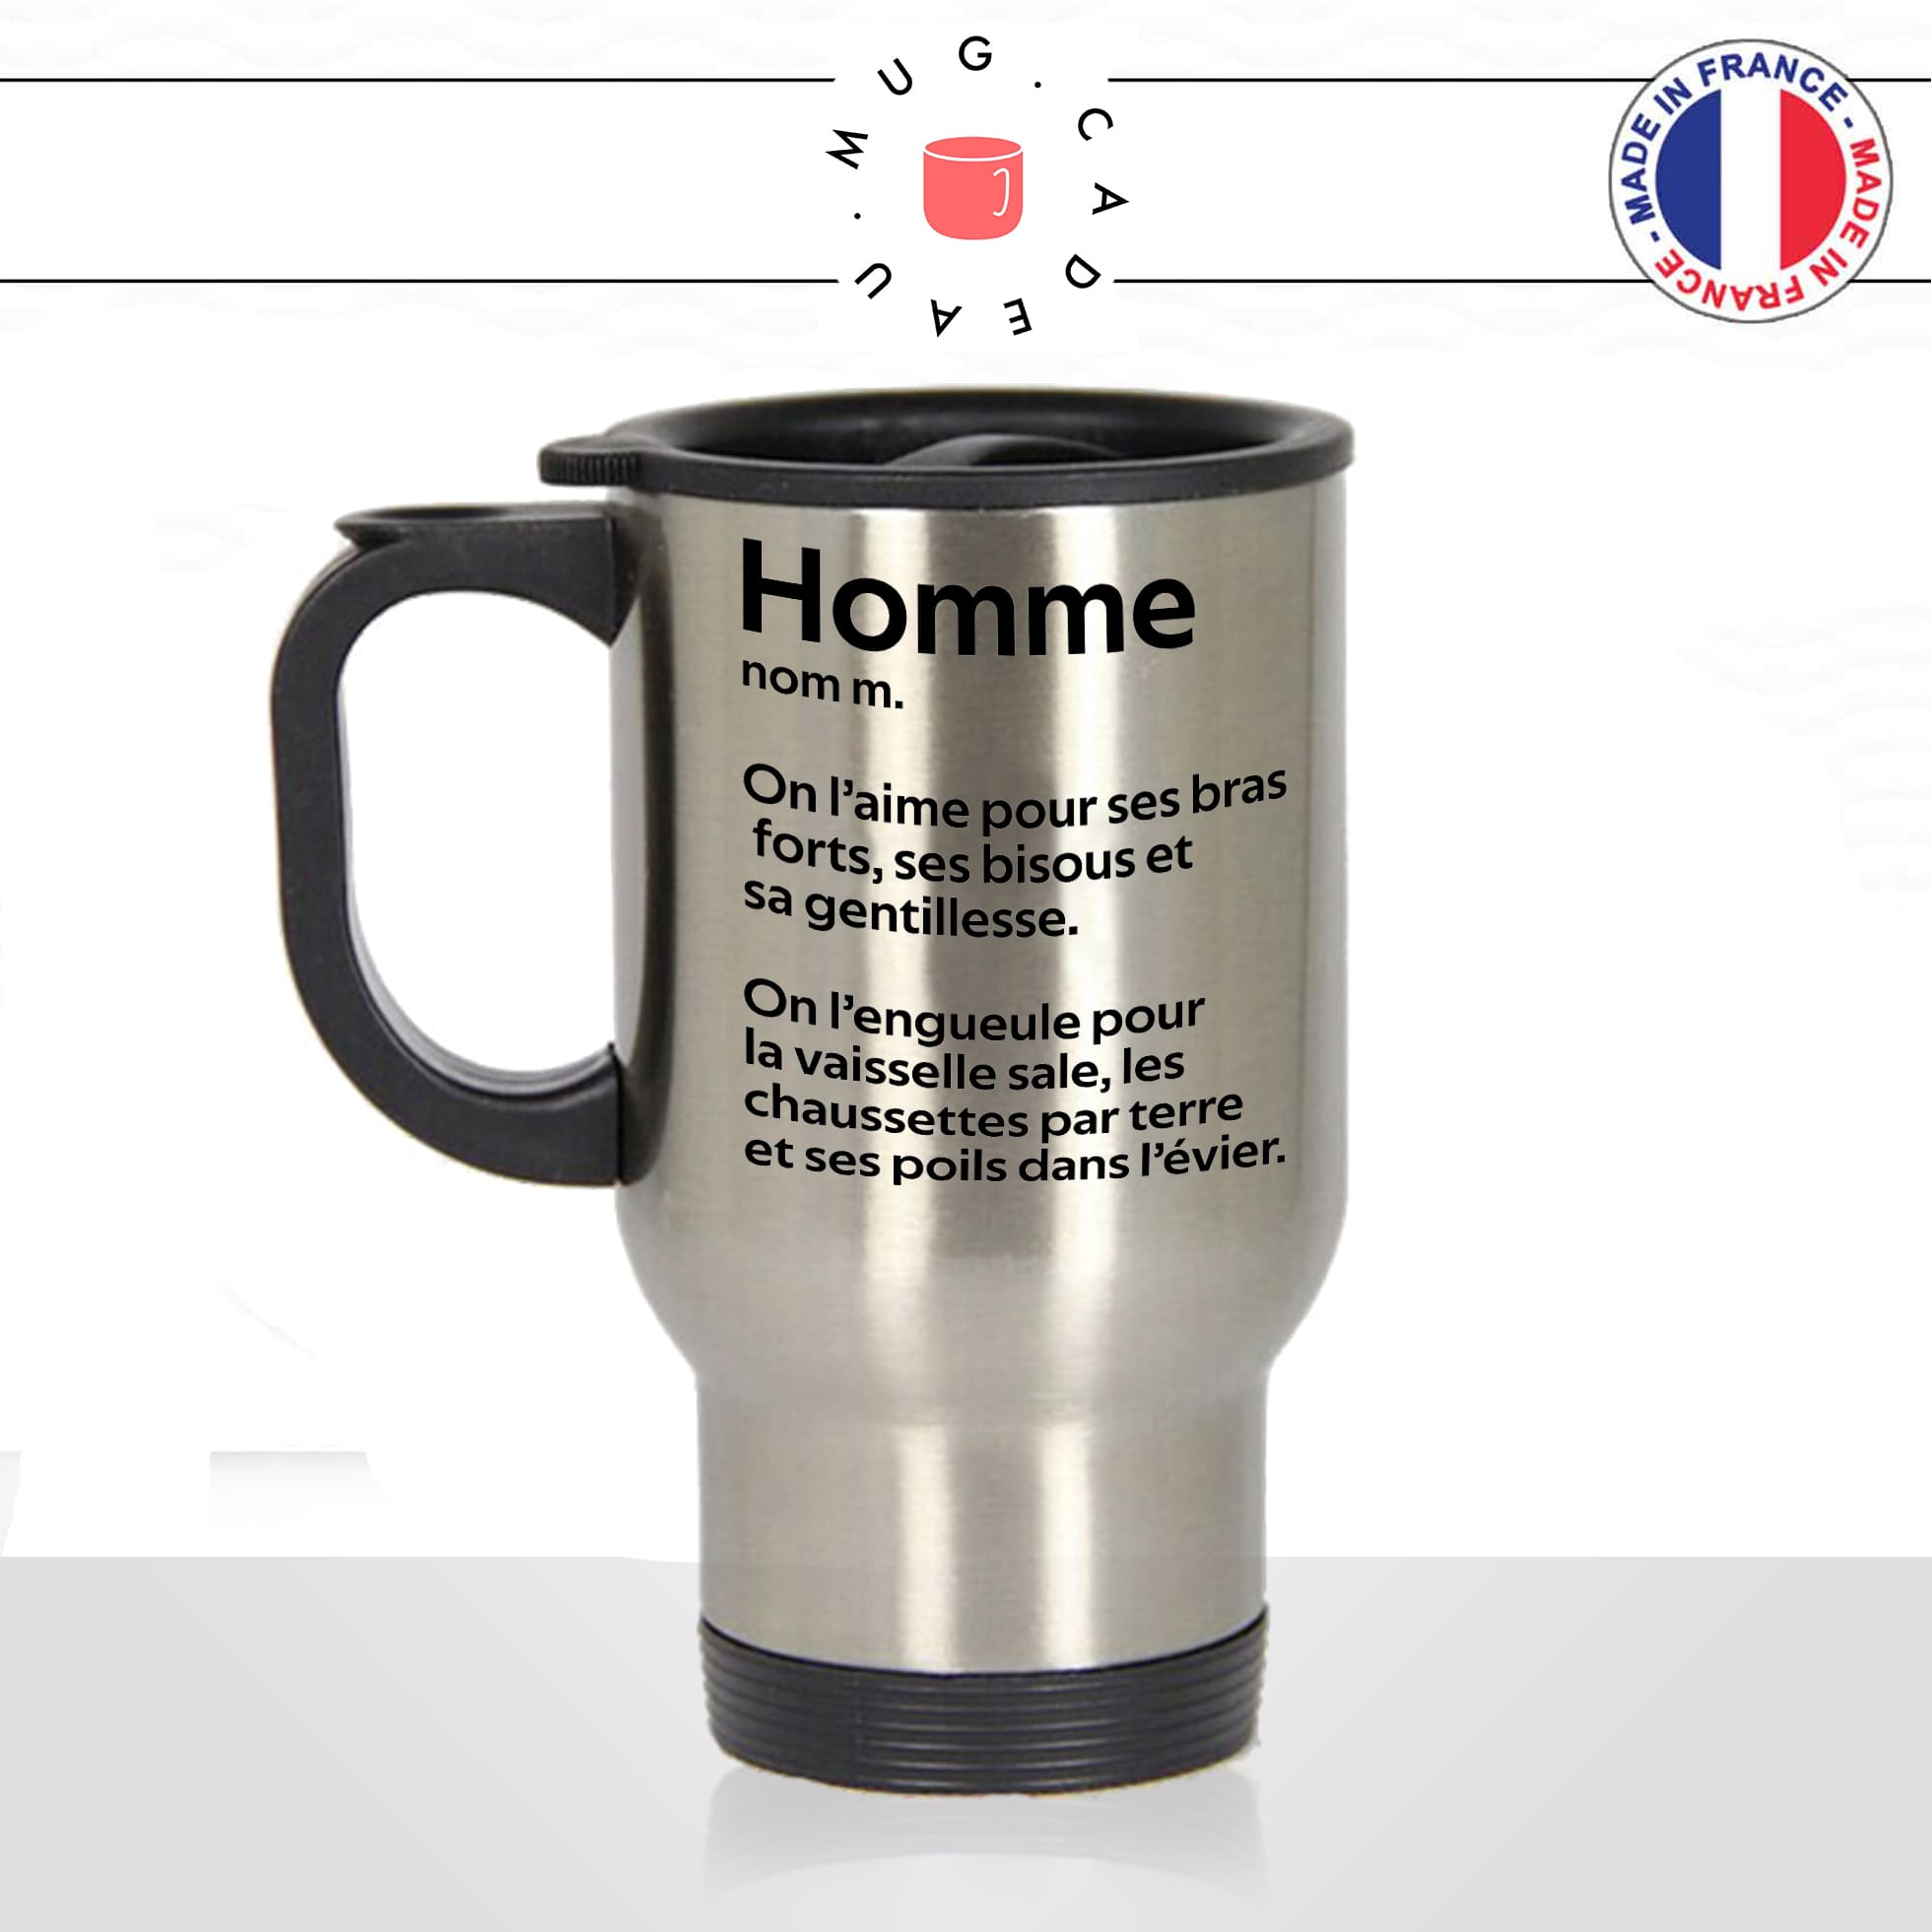 mug-tasse-thermos-isotherme-voyage-homme-définition-qualité-défaut-on-laime-vaisselle-sale-bras-forts-couple-humour-fun-idée-cadeau